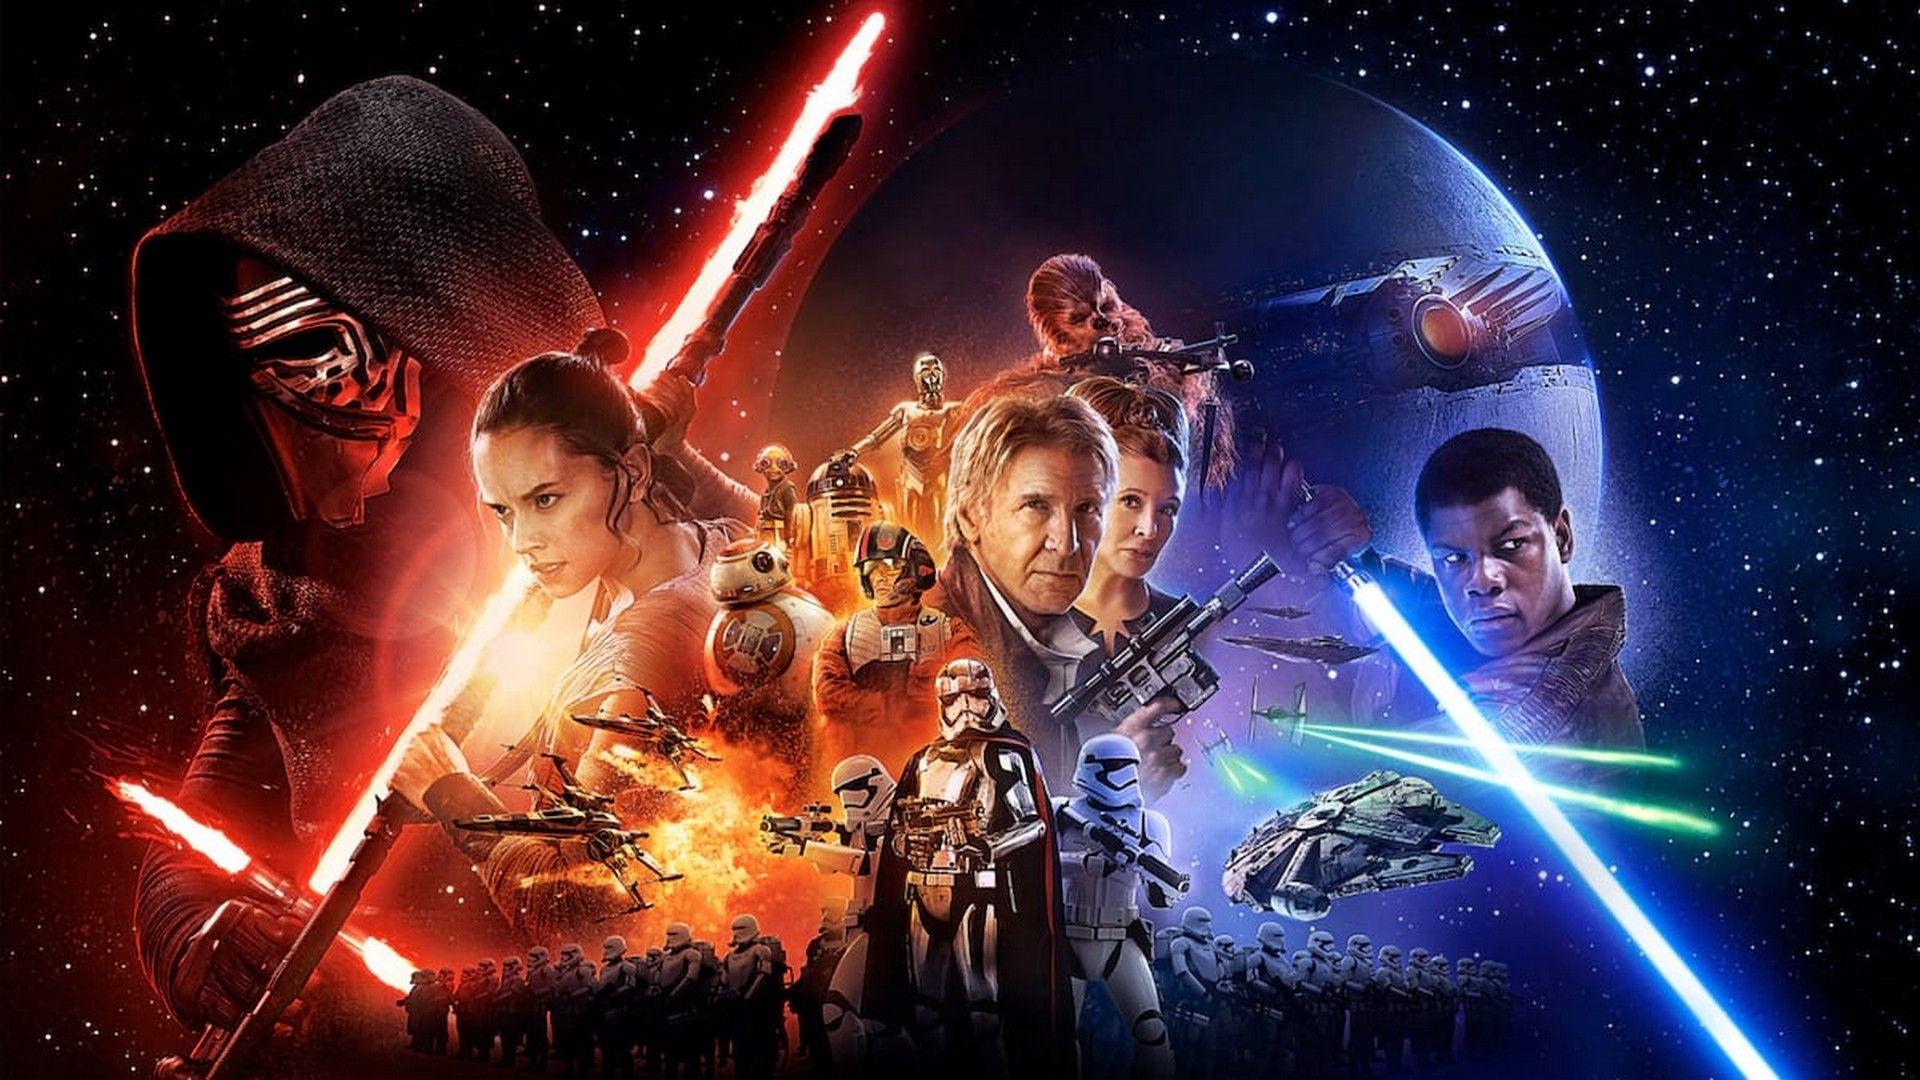 Star Wars: The Last Jedi wallpaper HD. Star Wars: The Last Jedi